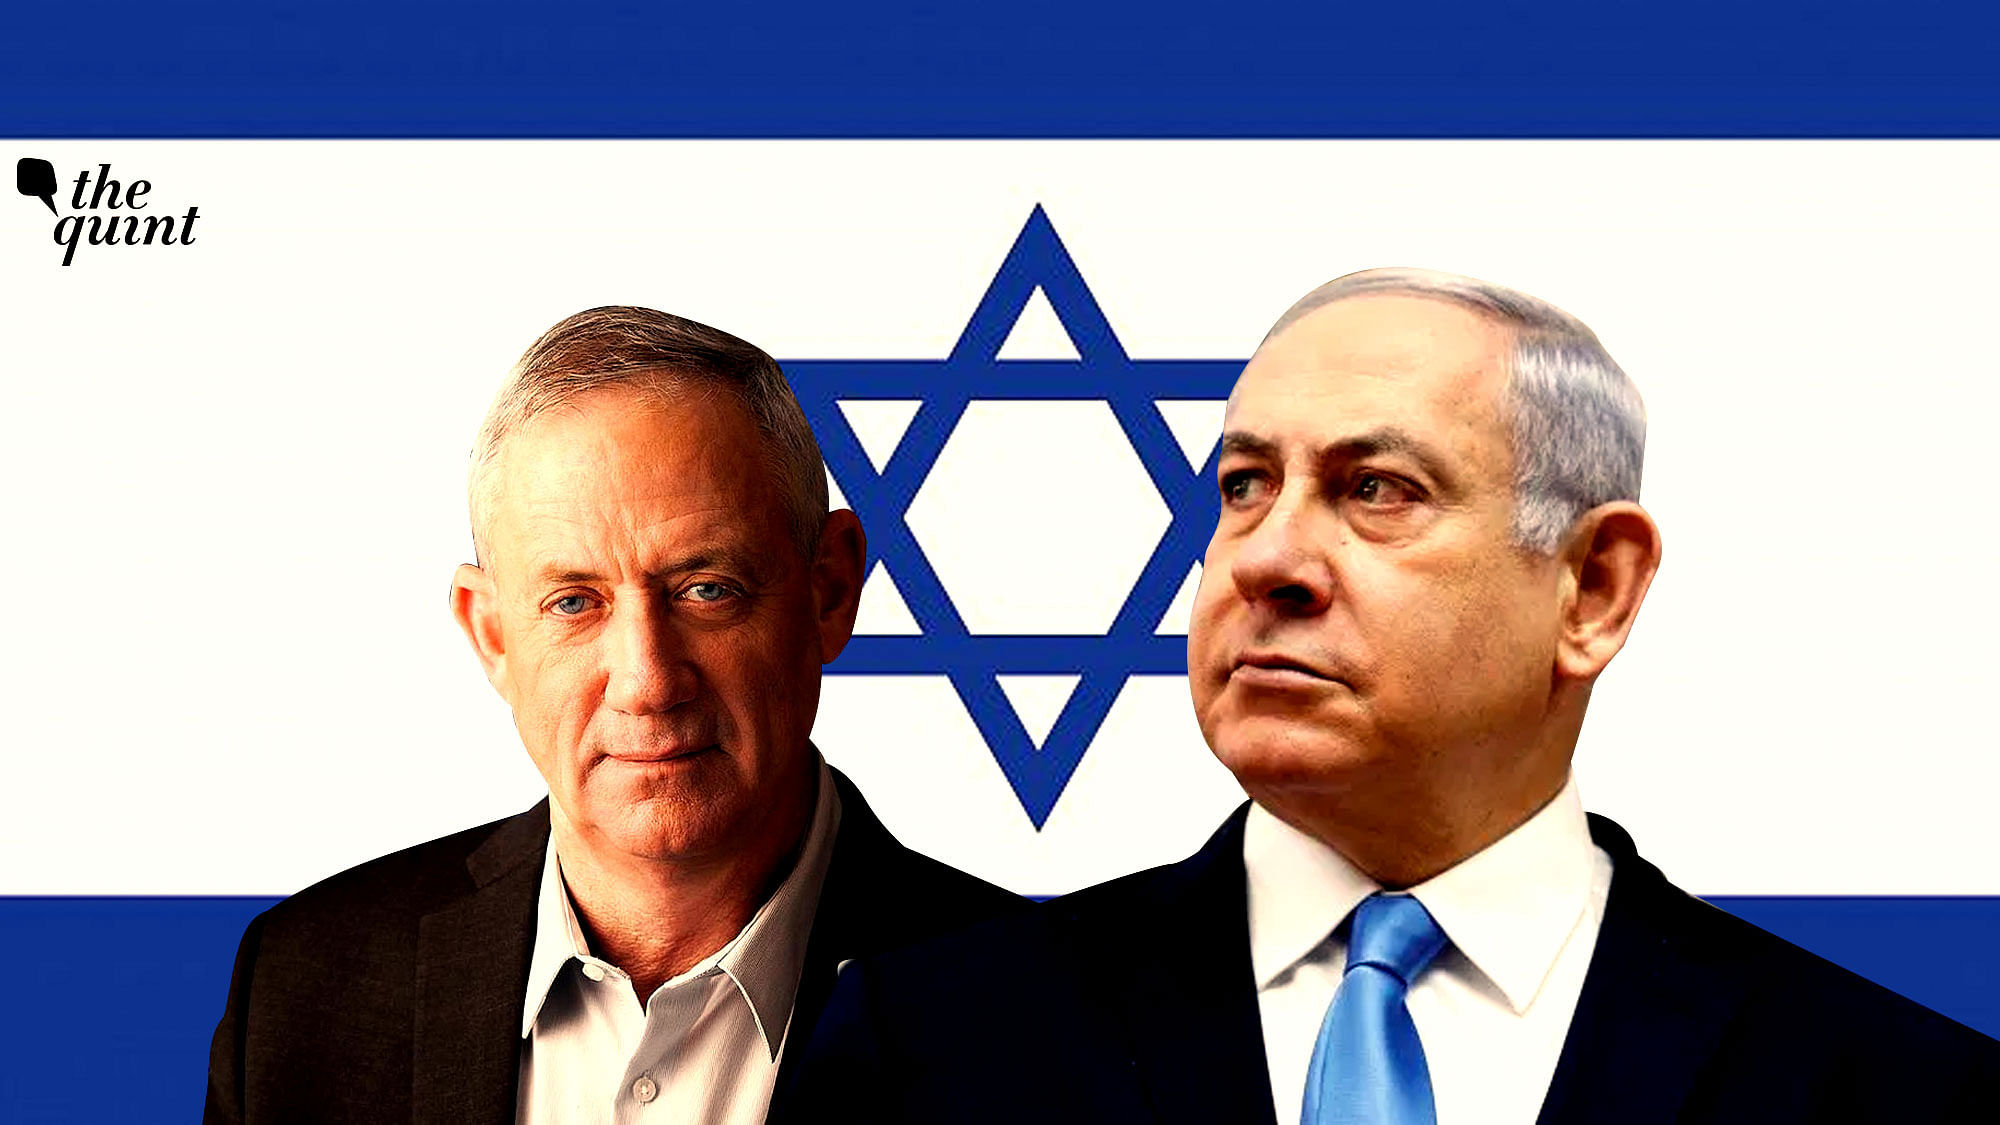 Image of Benny Gantz (L) and Benjamin Netanyahu (R) used for representational purposes.